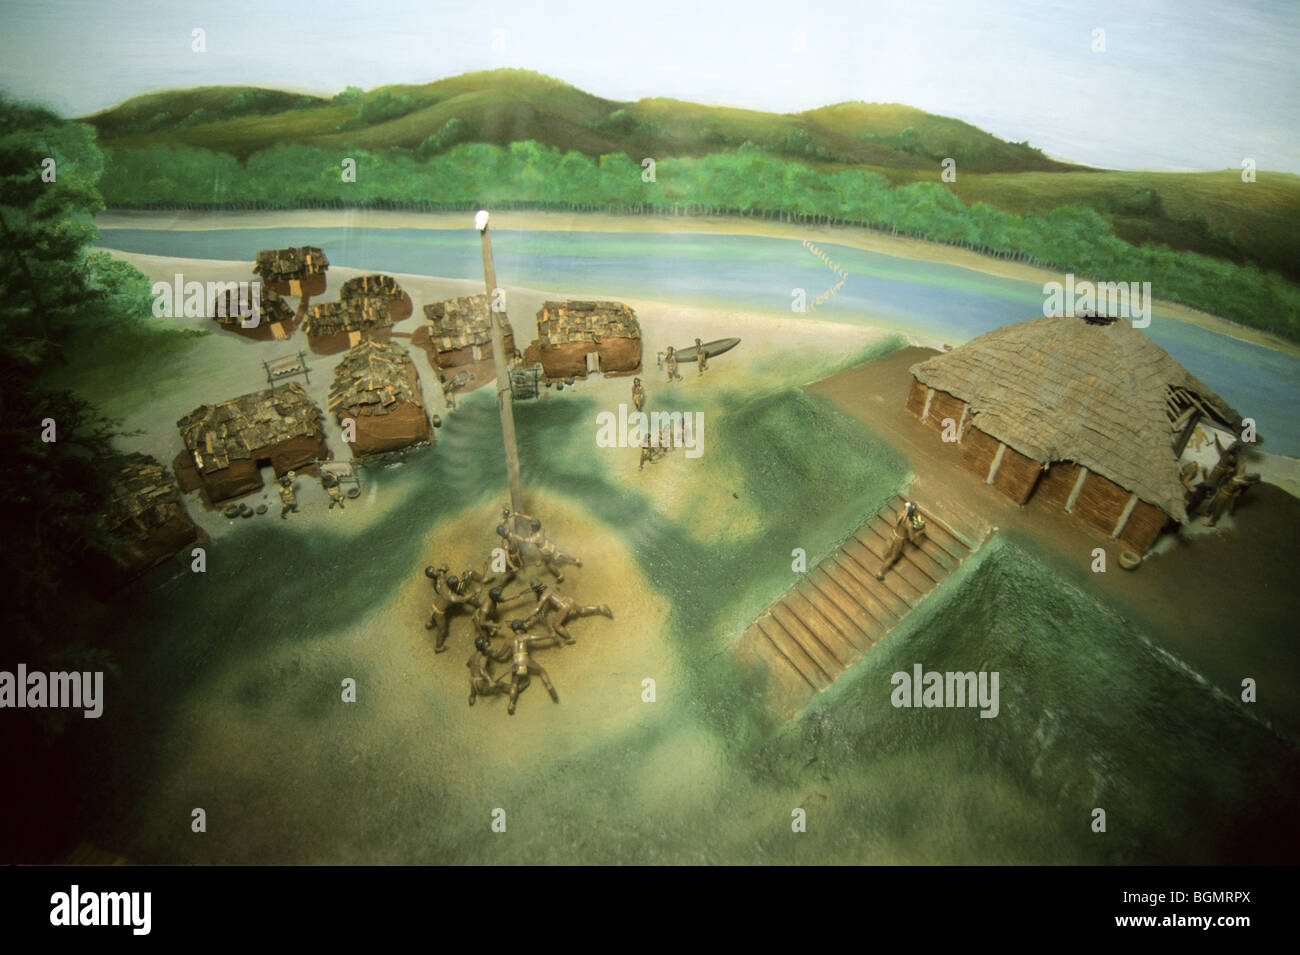 Modello del museo di che vita quotidiana a Etowah Indian Mounds, abitato intorno al 1000-1500 d.C., avrebbe assomigliato, Cartersville Georgia Foto Stock